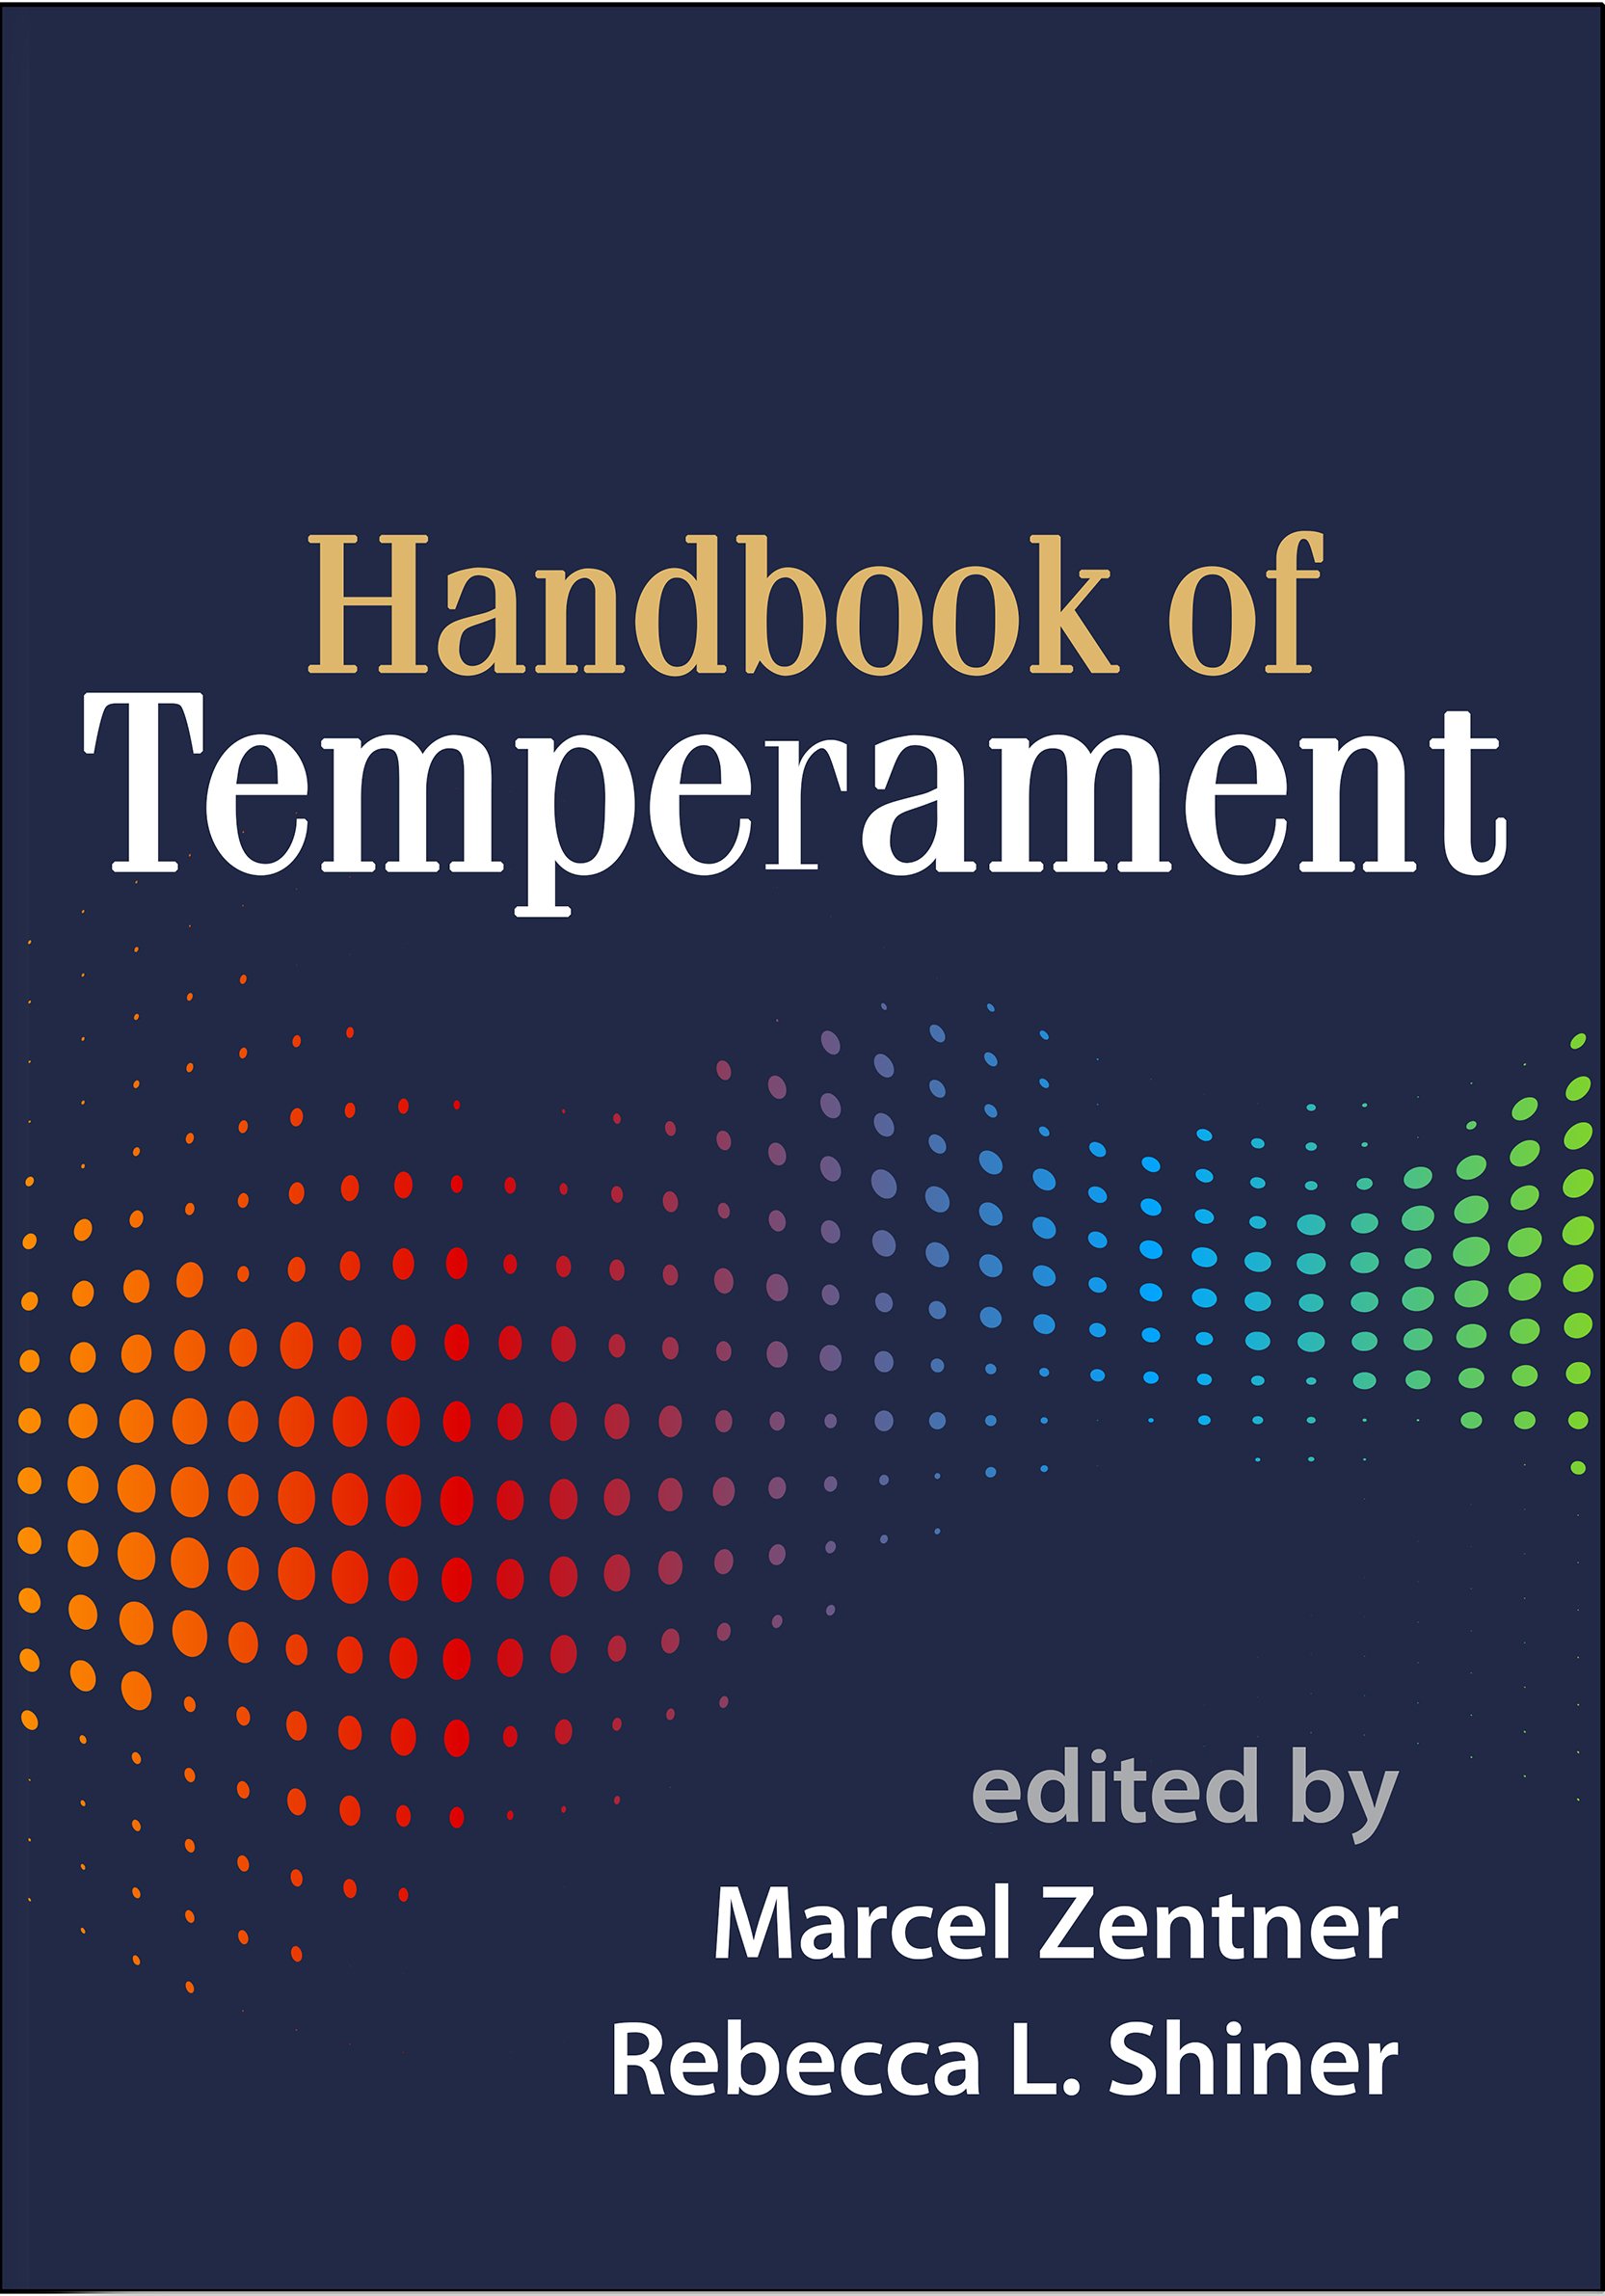 Imagen de portada del libro Handbook of temperament